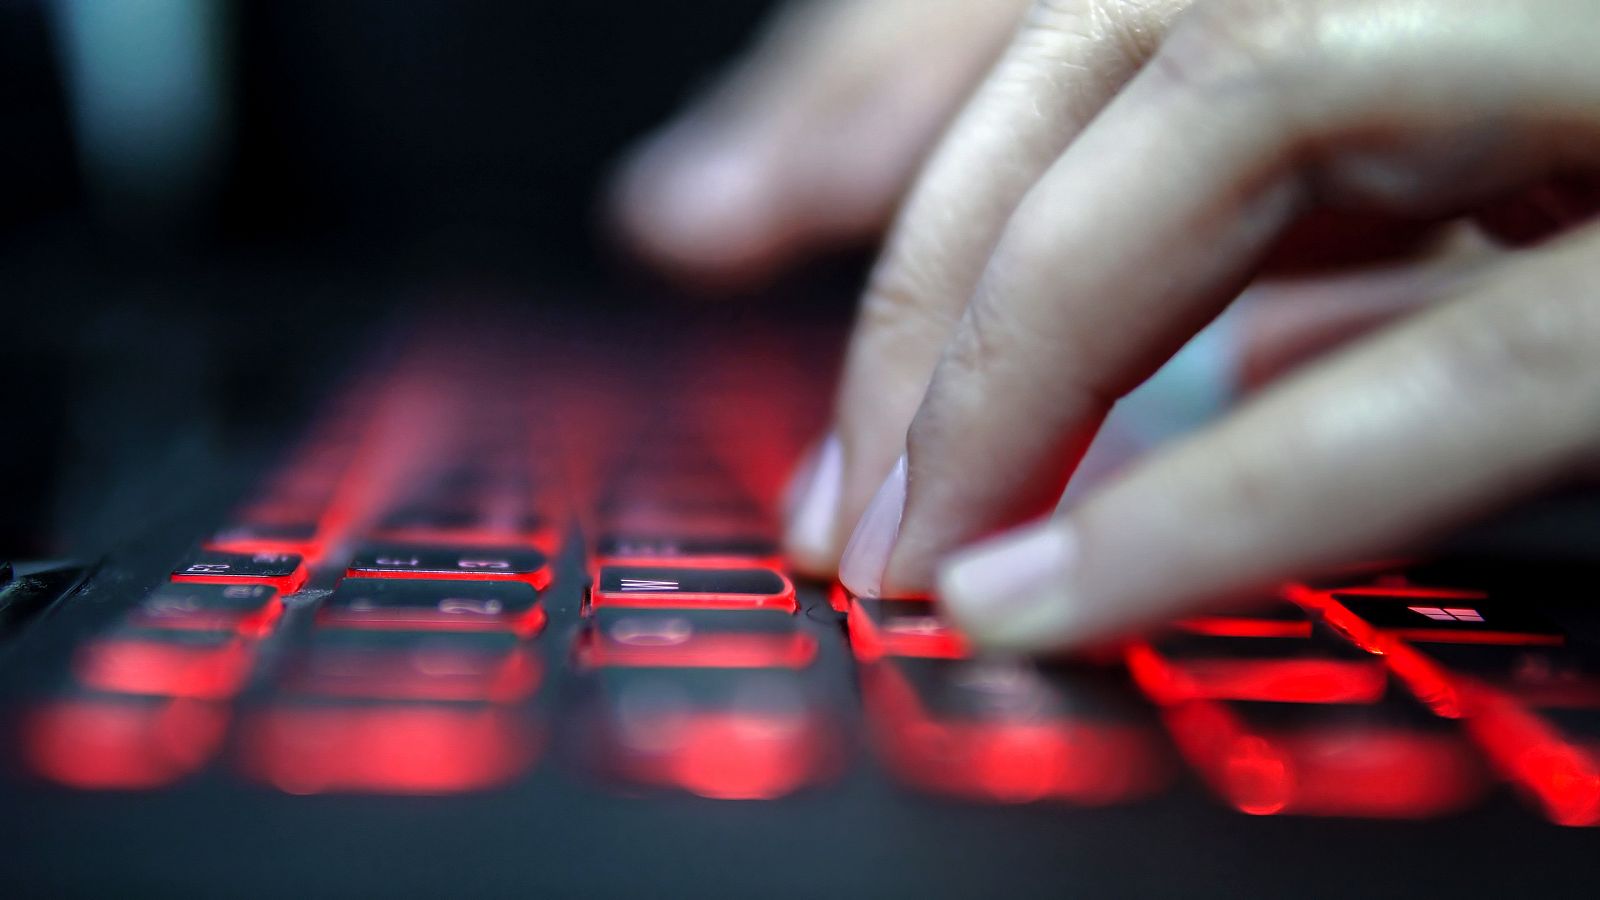 FireEye ofrece servicios de ciberseguridad, tanto a empresas como a Gobiernos